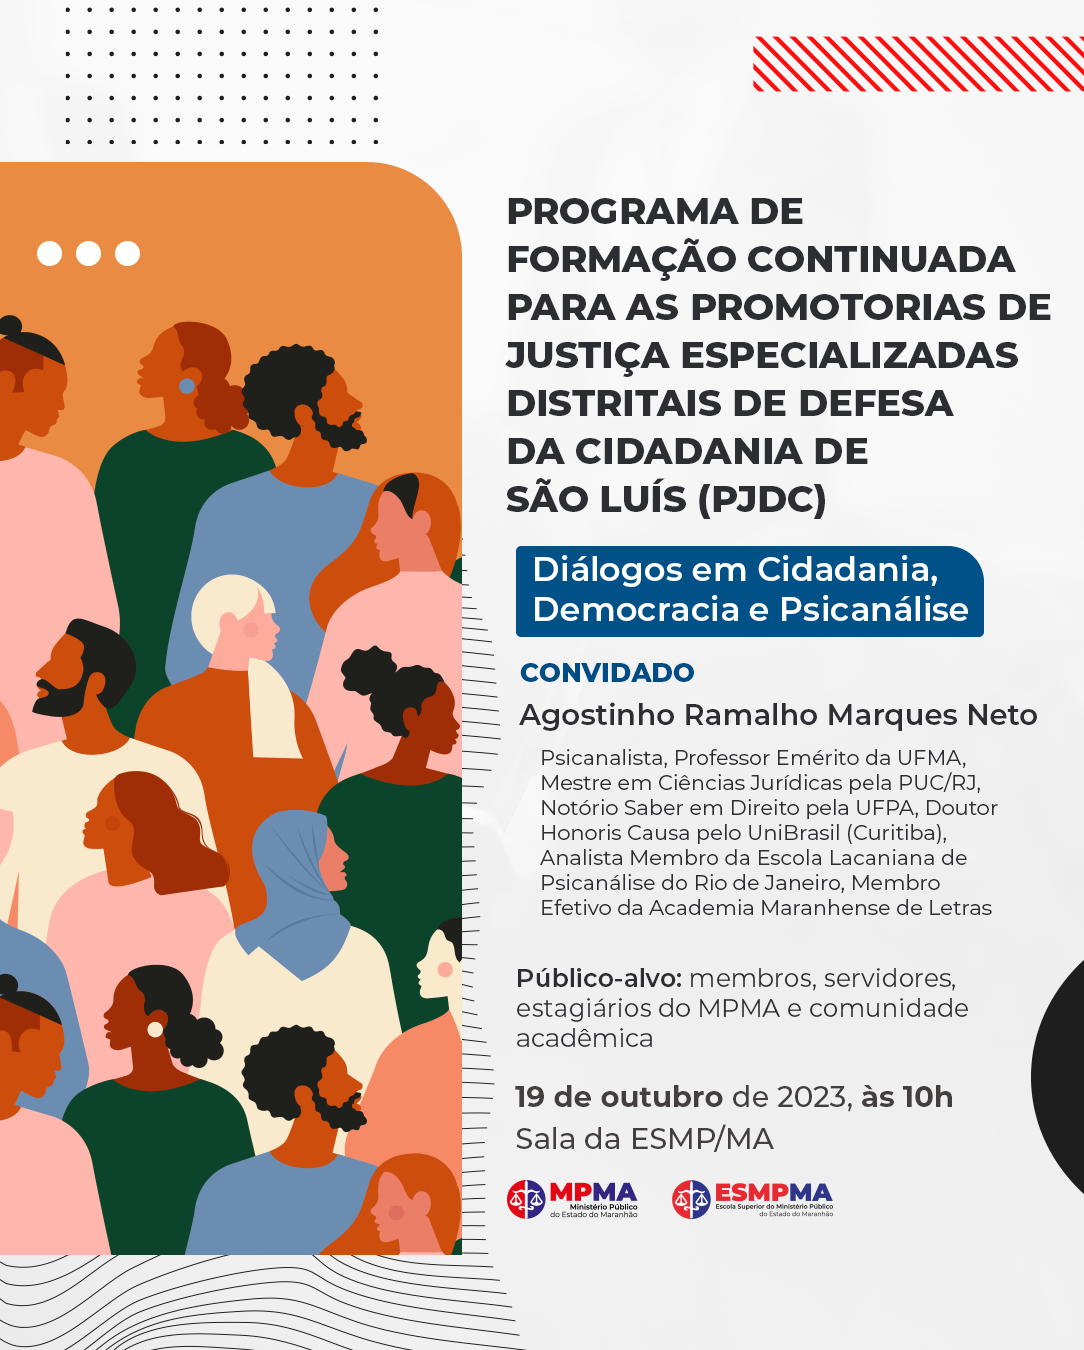 Programa de Formação continuada para as Promotorias de Justiça especializadas distritais de defesa da cidadania de São Luís (PJDC)